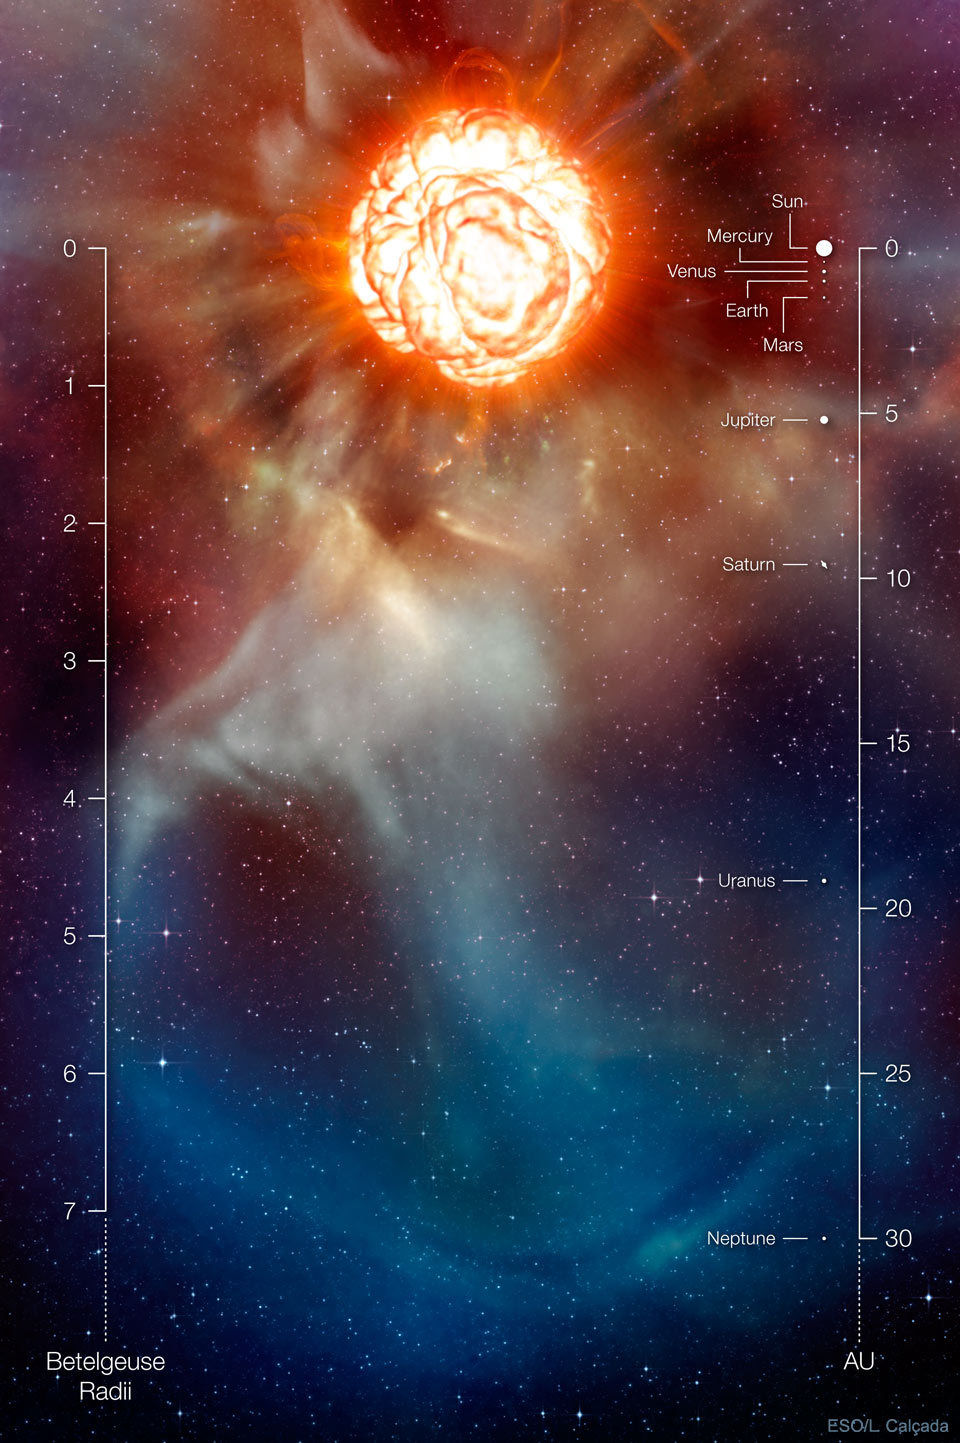 Siehe Beschreibung. Visualisierung des roten Riesensterns Beteigeuze; Ein Klick auf das Bild lädt die höchstaufgelöste verfügbare Version.